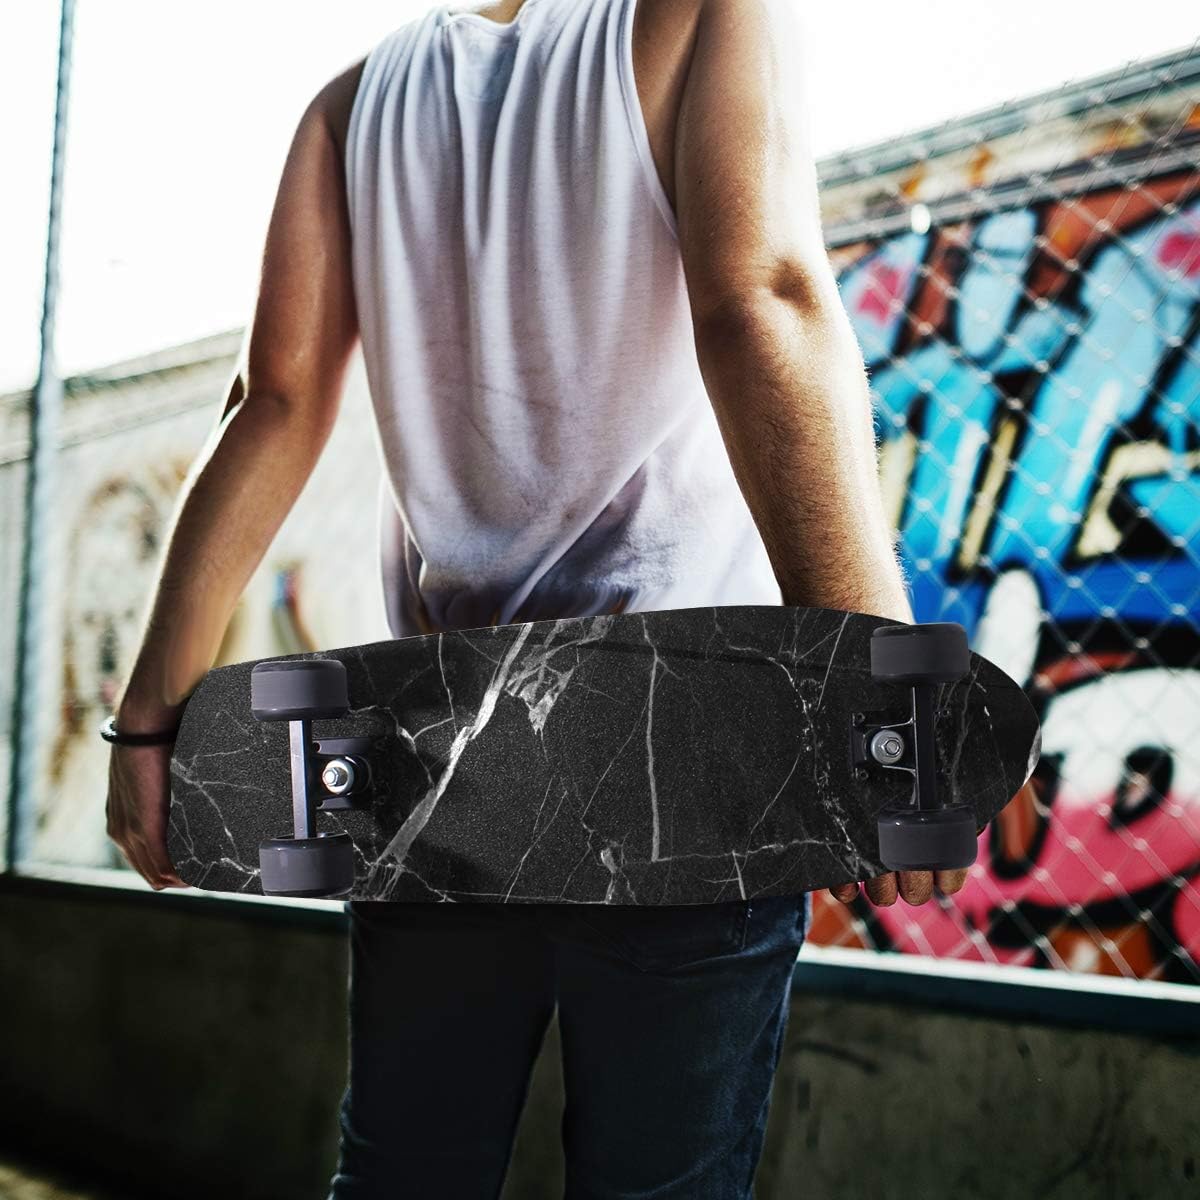 デッキカセット 手持ち部分テープ スケボー スケートボード 海外デザイン 送料無料 Yyzzh Natural Black Marble Print Patterned Skateboard Grip Tape 9 X33 Anti Slip Sandpaper Longboard Scootデッキテープ グリップテープ スケボー スケートボード 海外モデル